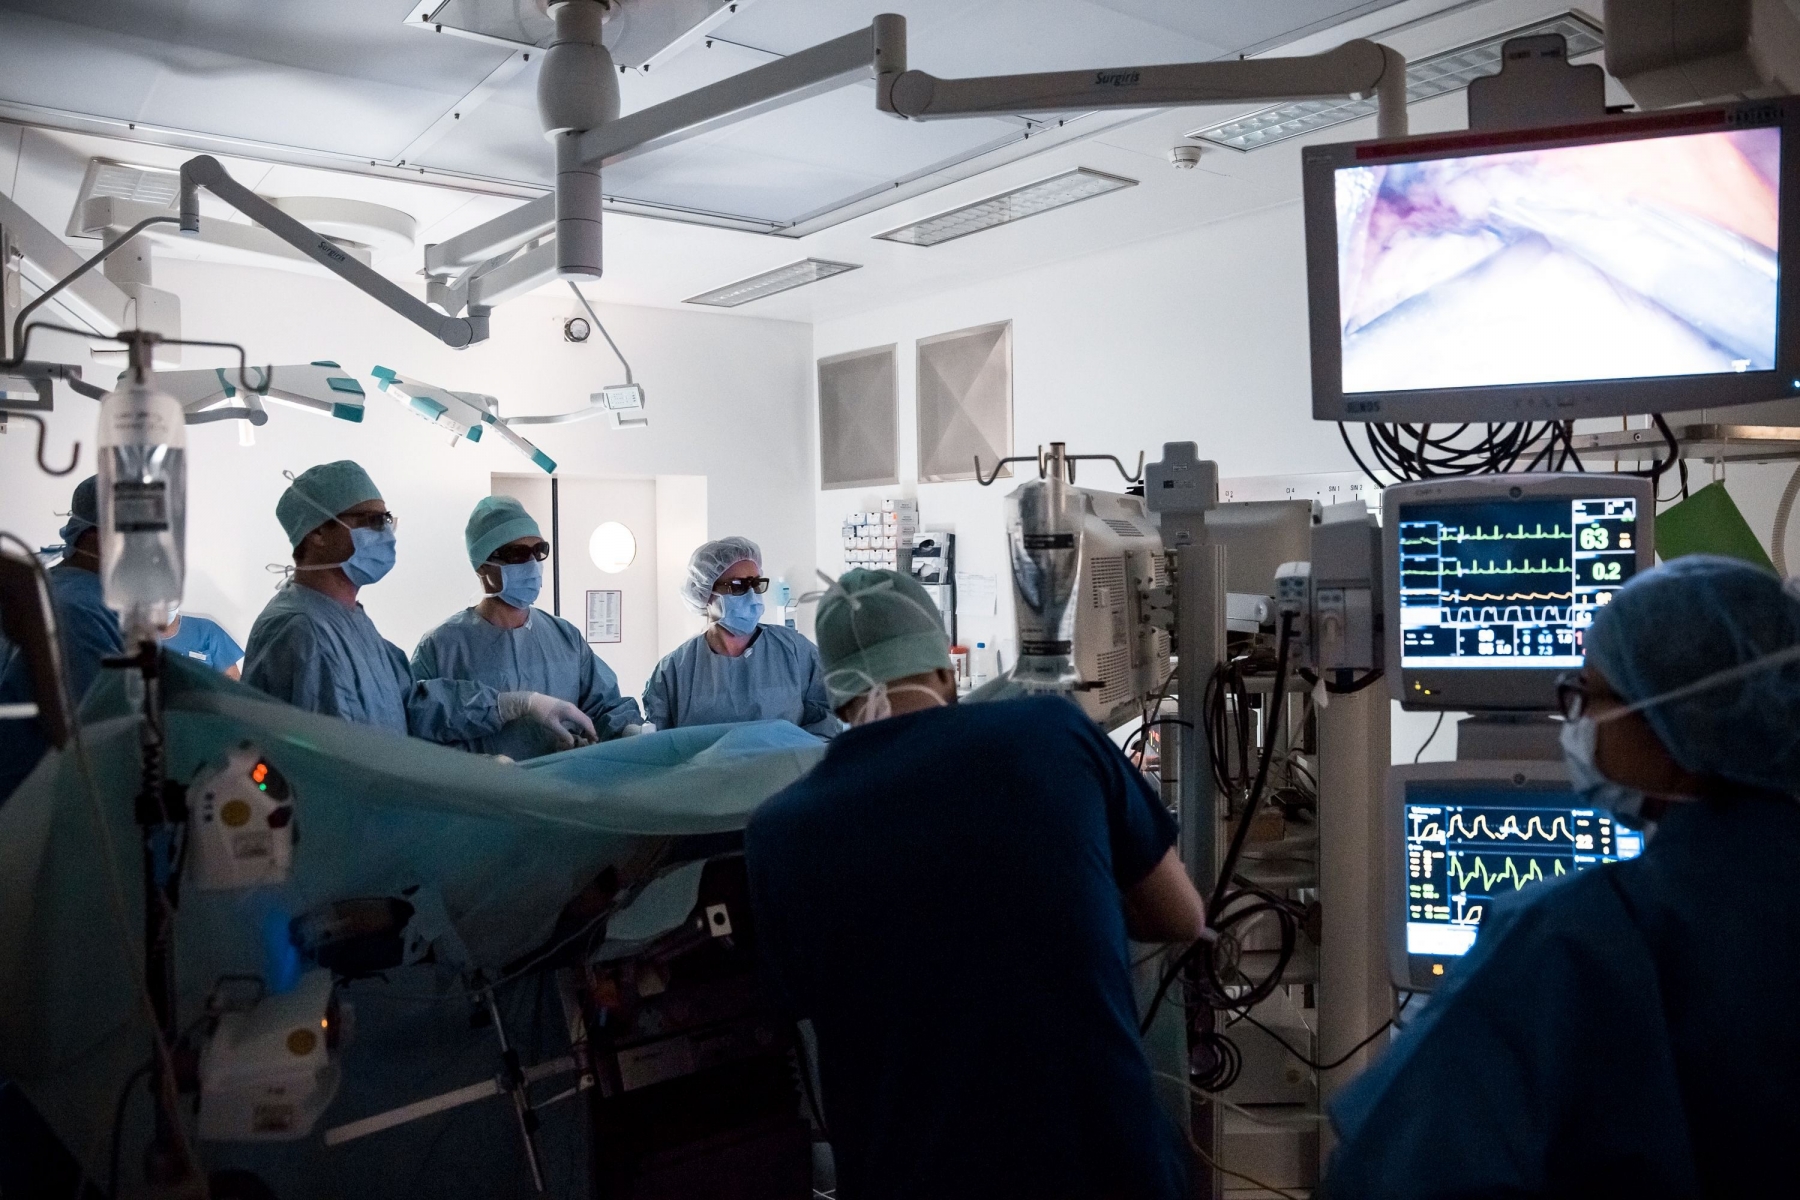 Le duo de chirurgiens a opéré avec succès un fœtus in utero d'une tumeur au poumon. (Image prétexte)